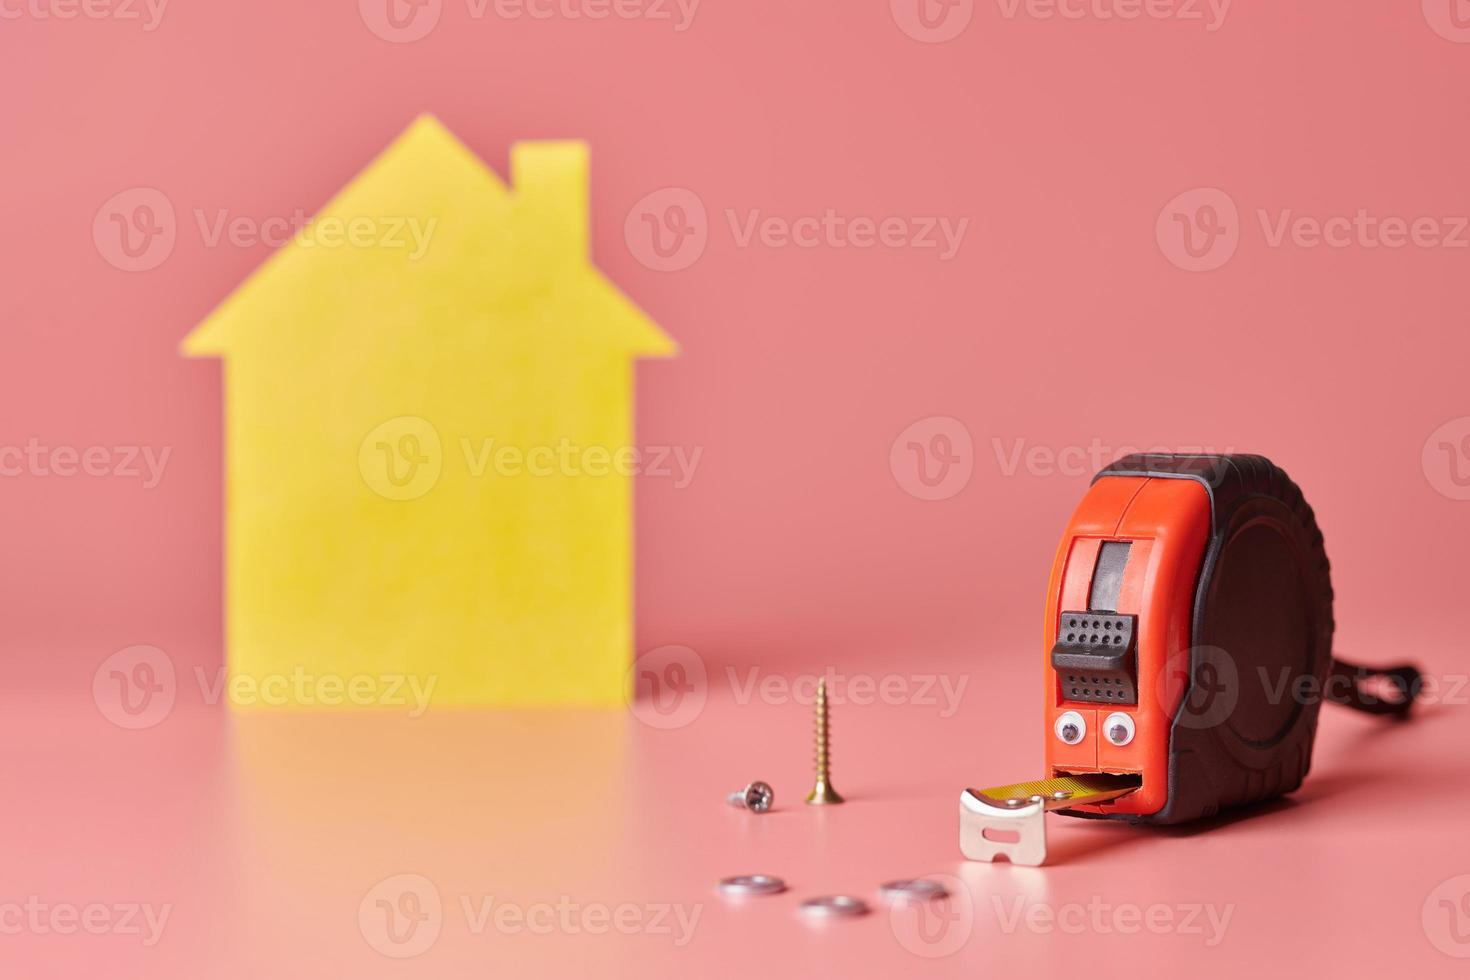 Metallbandmaß lustiges Konzept. Hausrenovierung. hausreparatur und neu gestaltetes konzept. gelbe hausförmige figur auf rosa hintergrund. foto